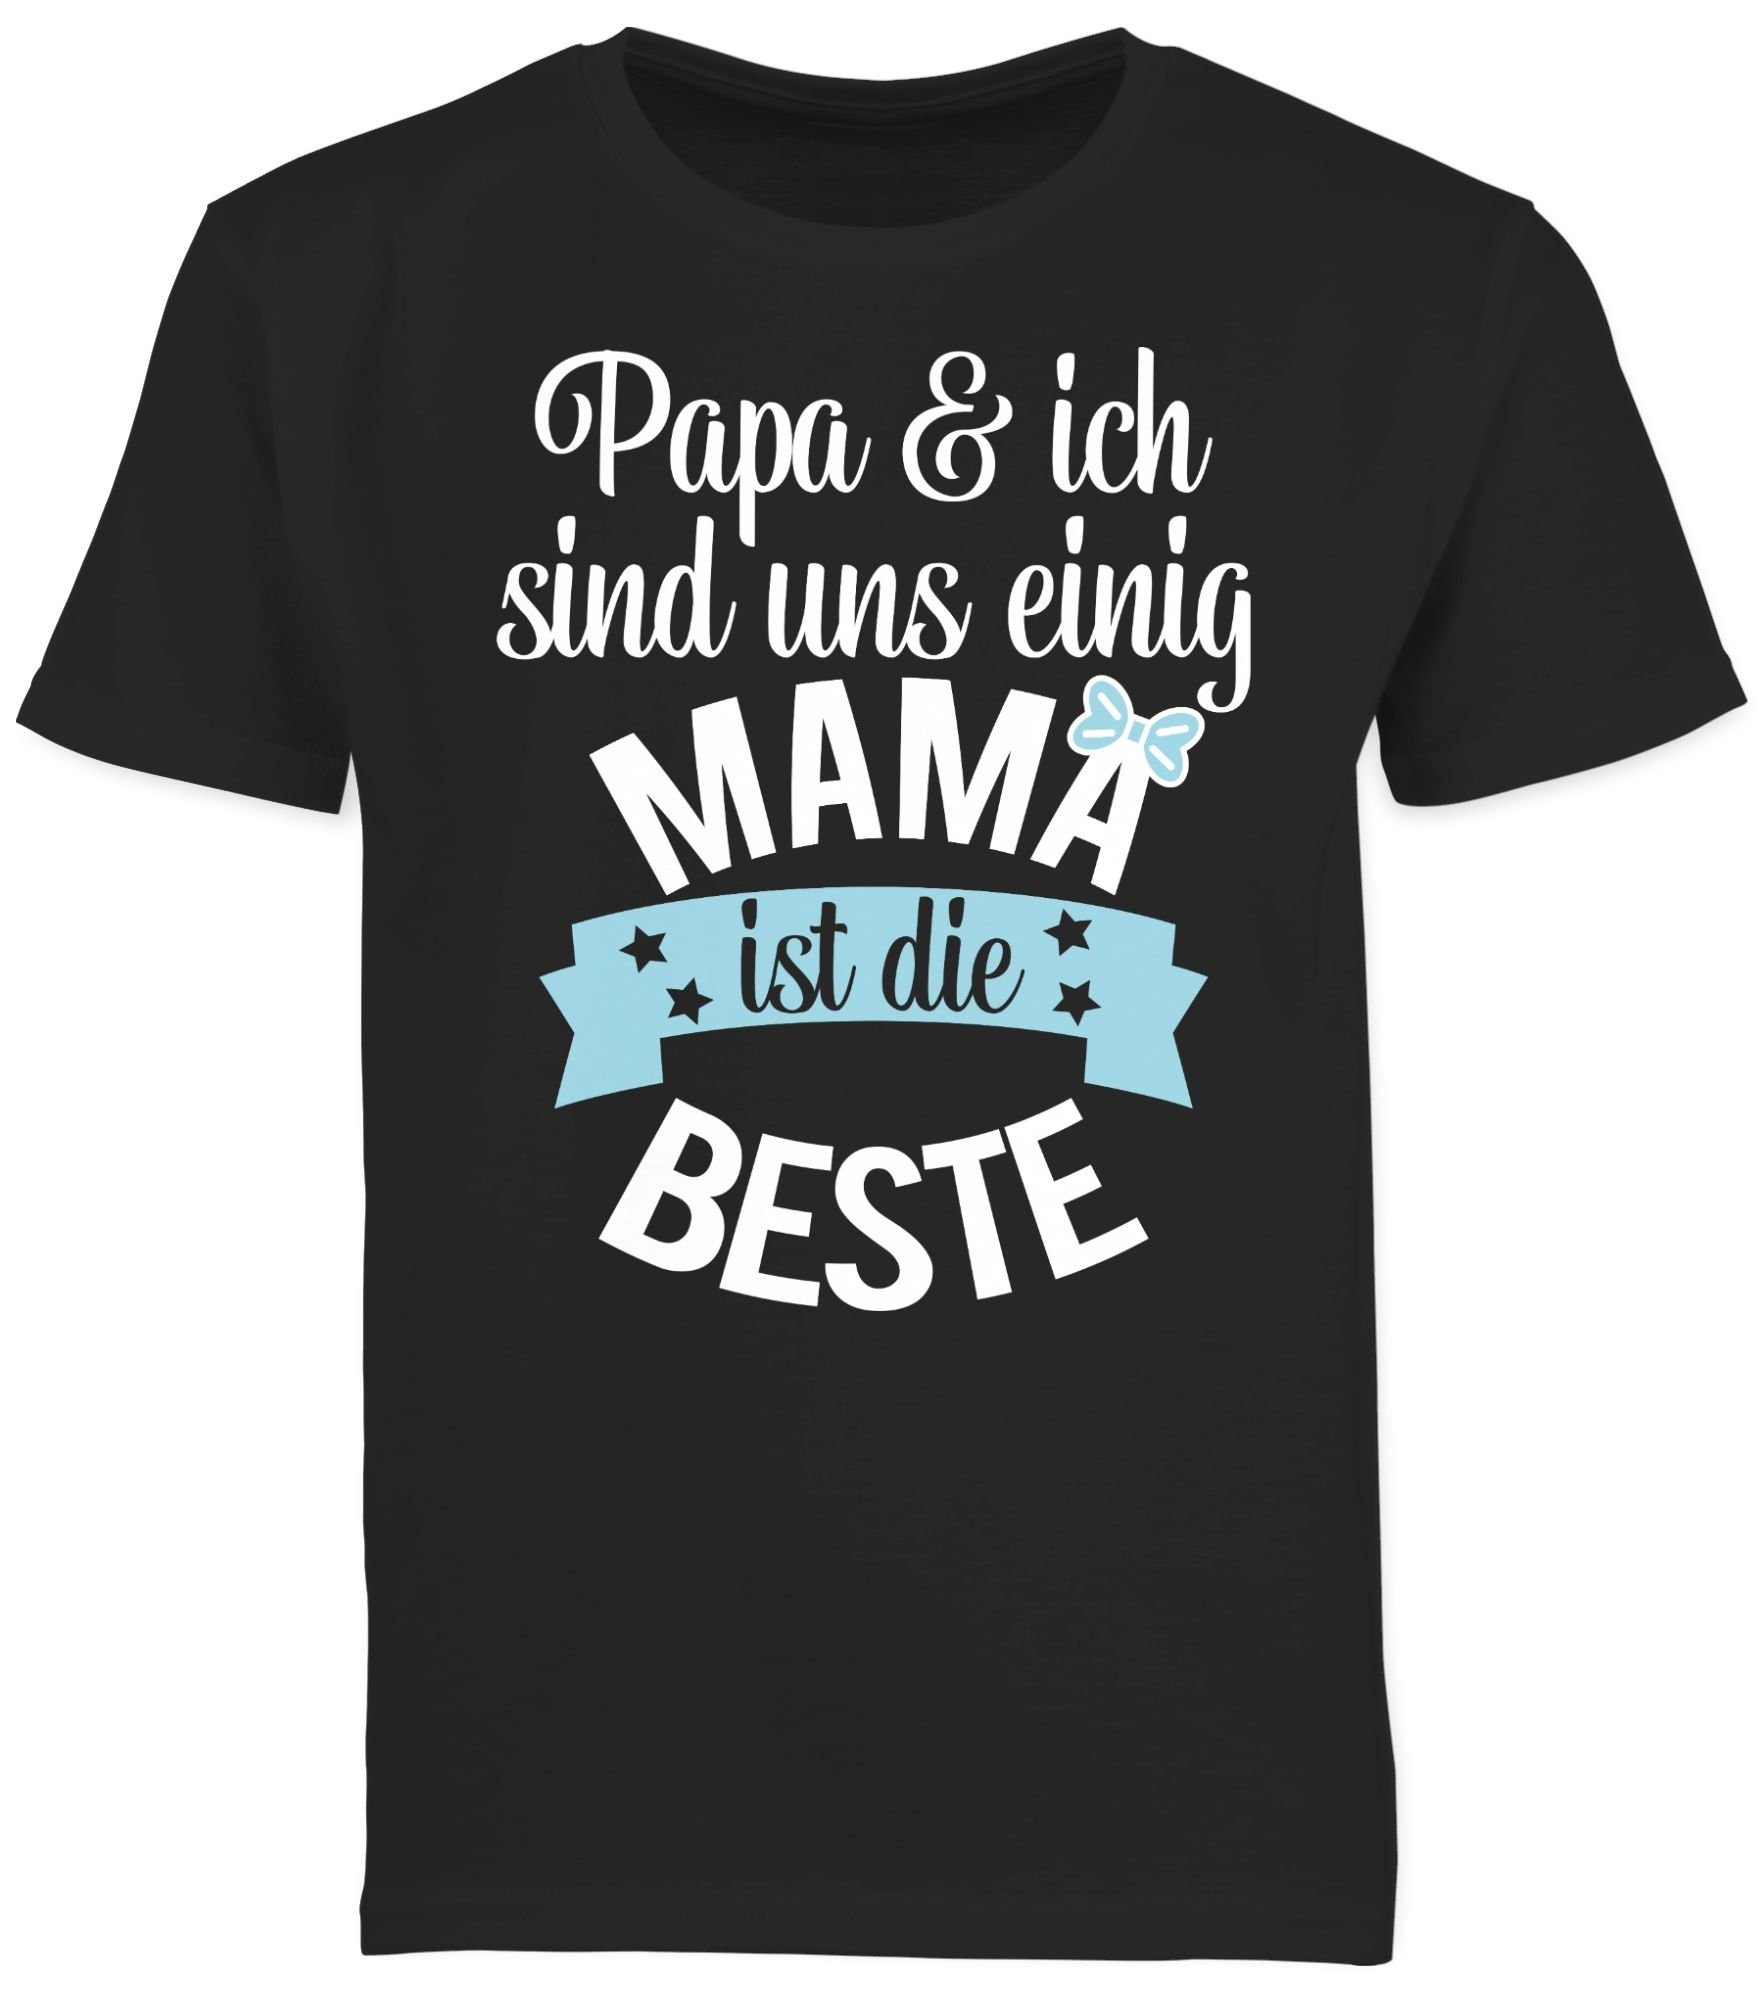 I ist Muttertagsgeschenk die 03 Beste Shirtracer T-Shirt Schwarz Mama